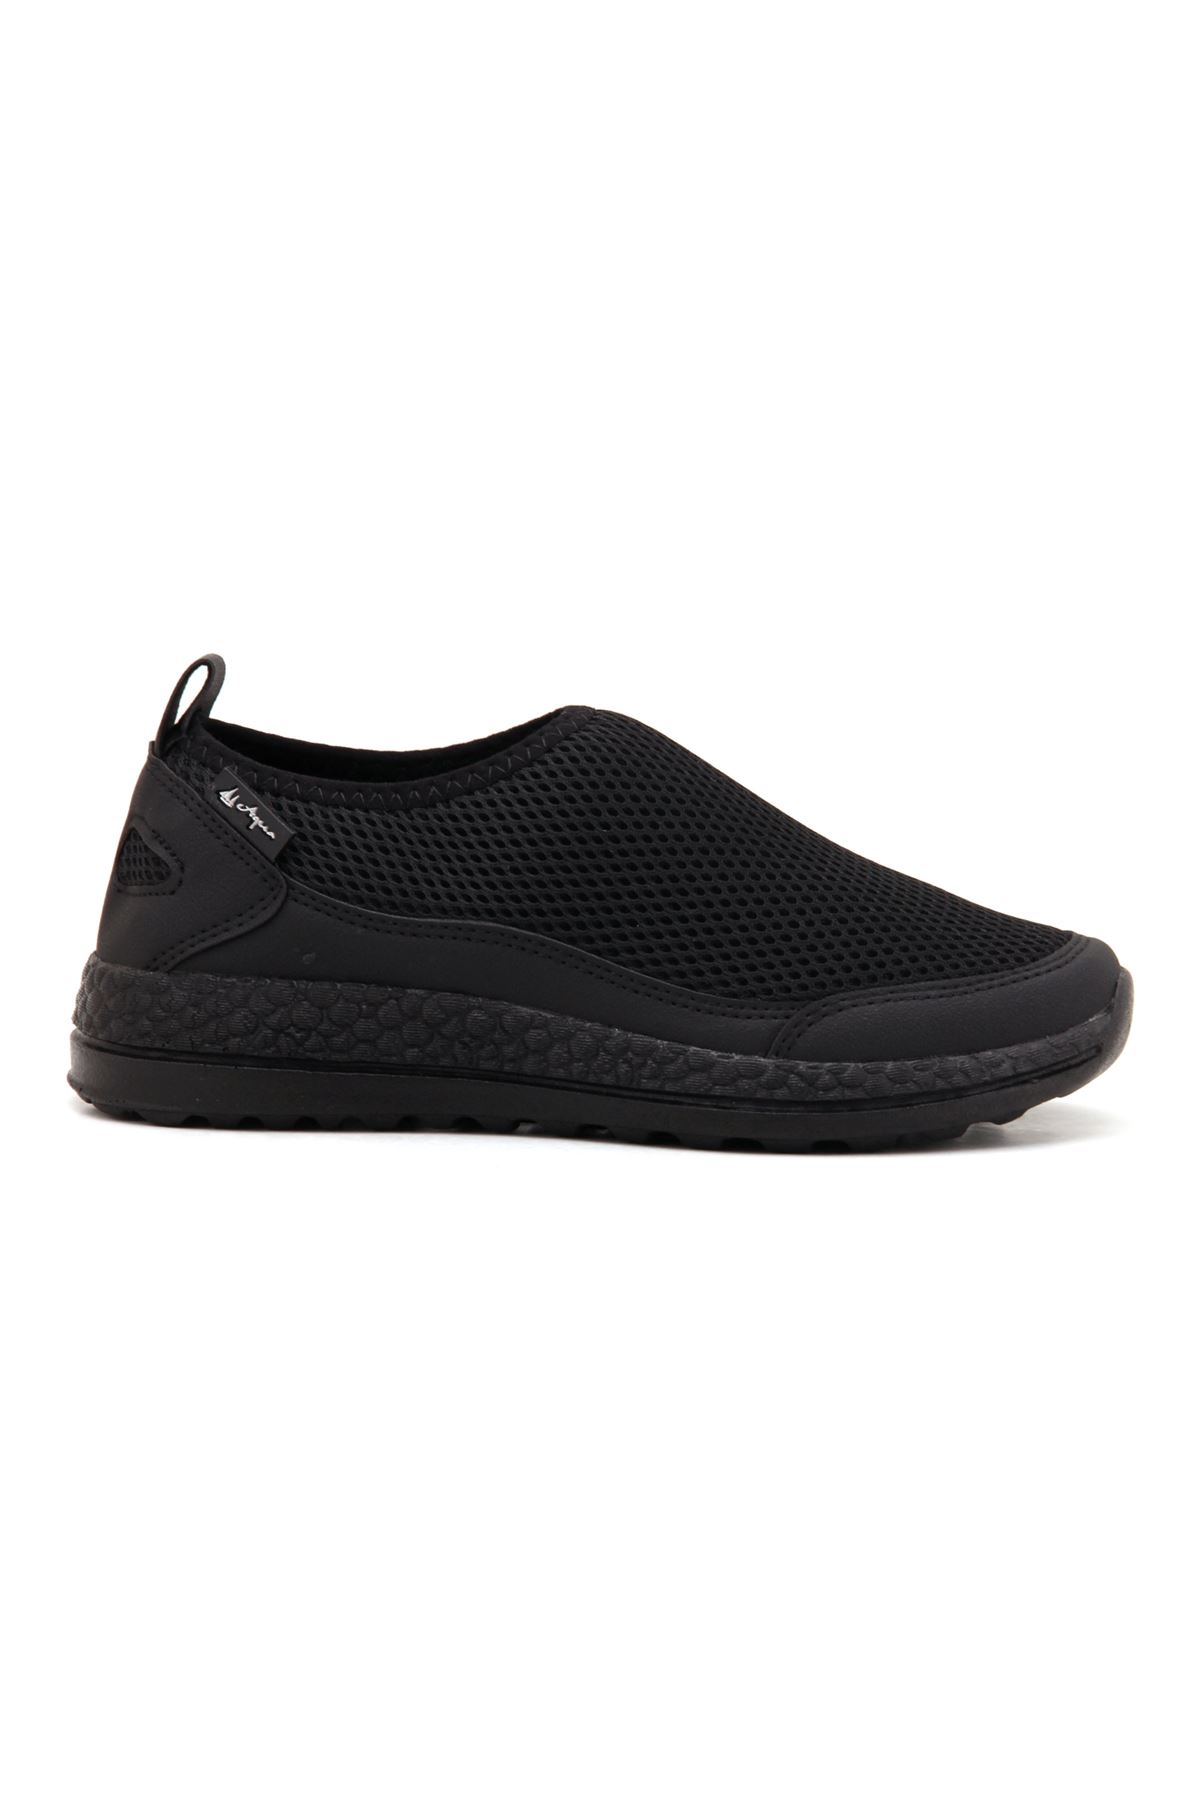 Ayaktamoda Comfort Erkek Spor Ayakkabı - Siyah